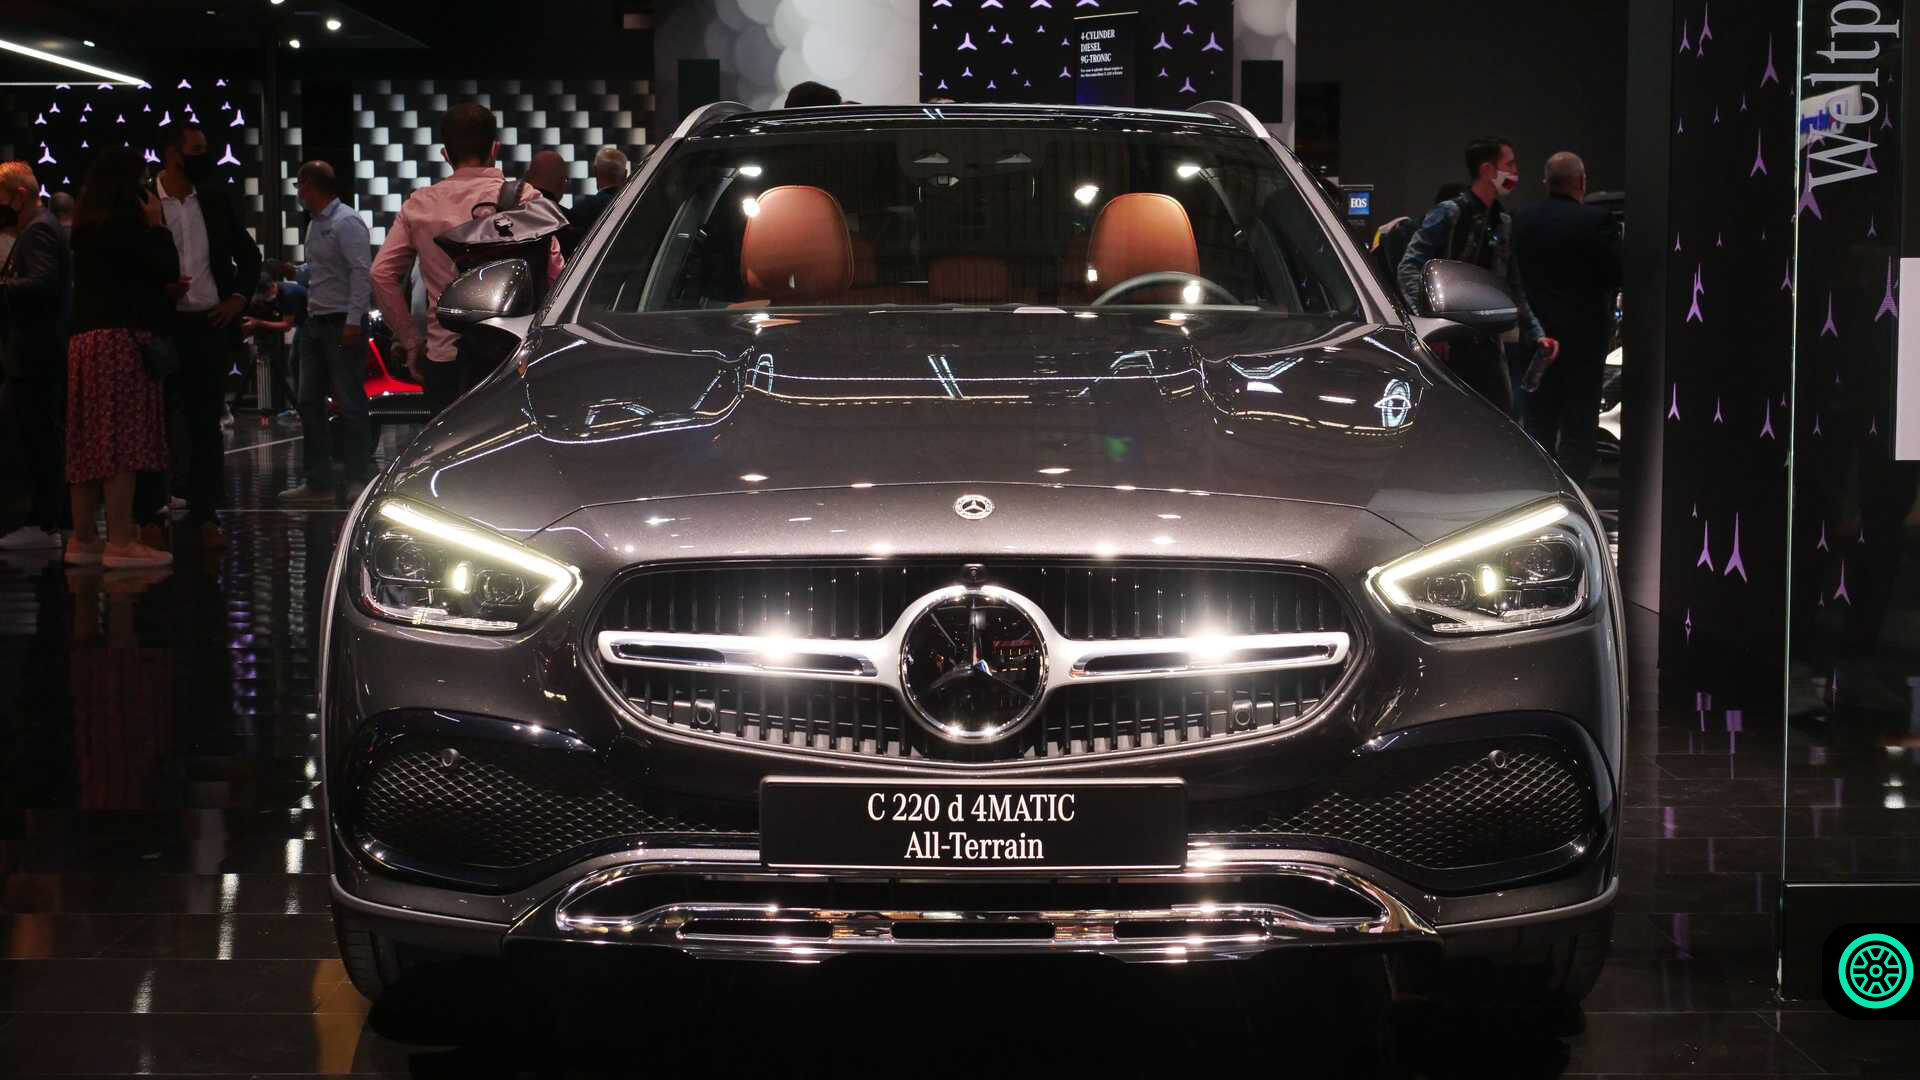 Yeni Mercedes-Benz C-Serisi All-Terrain modeli Münih Otomobil Fuarında gösterildi! 12